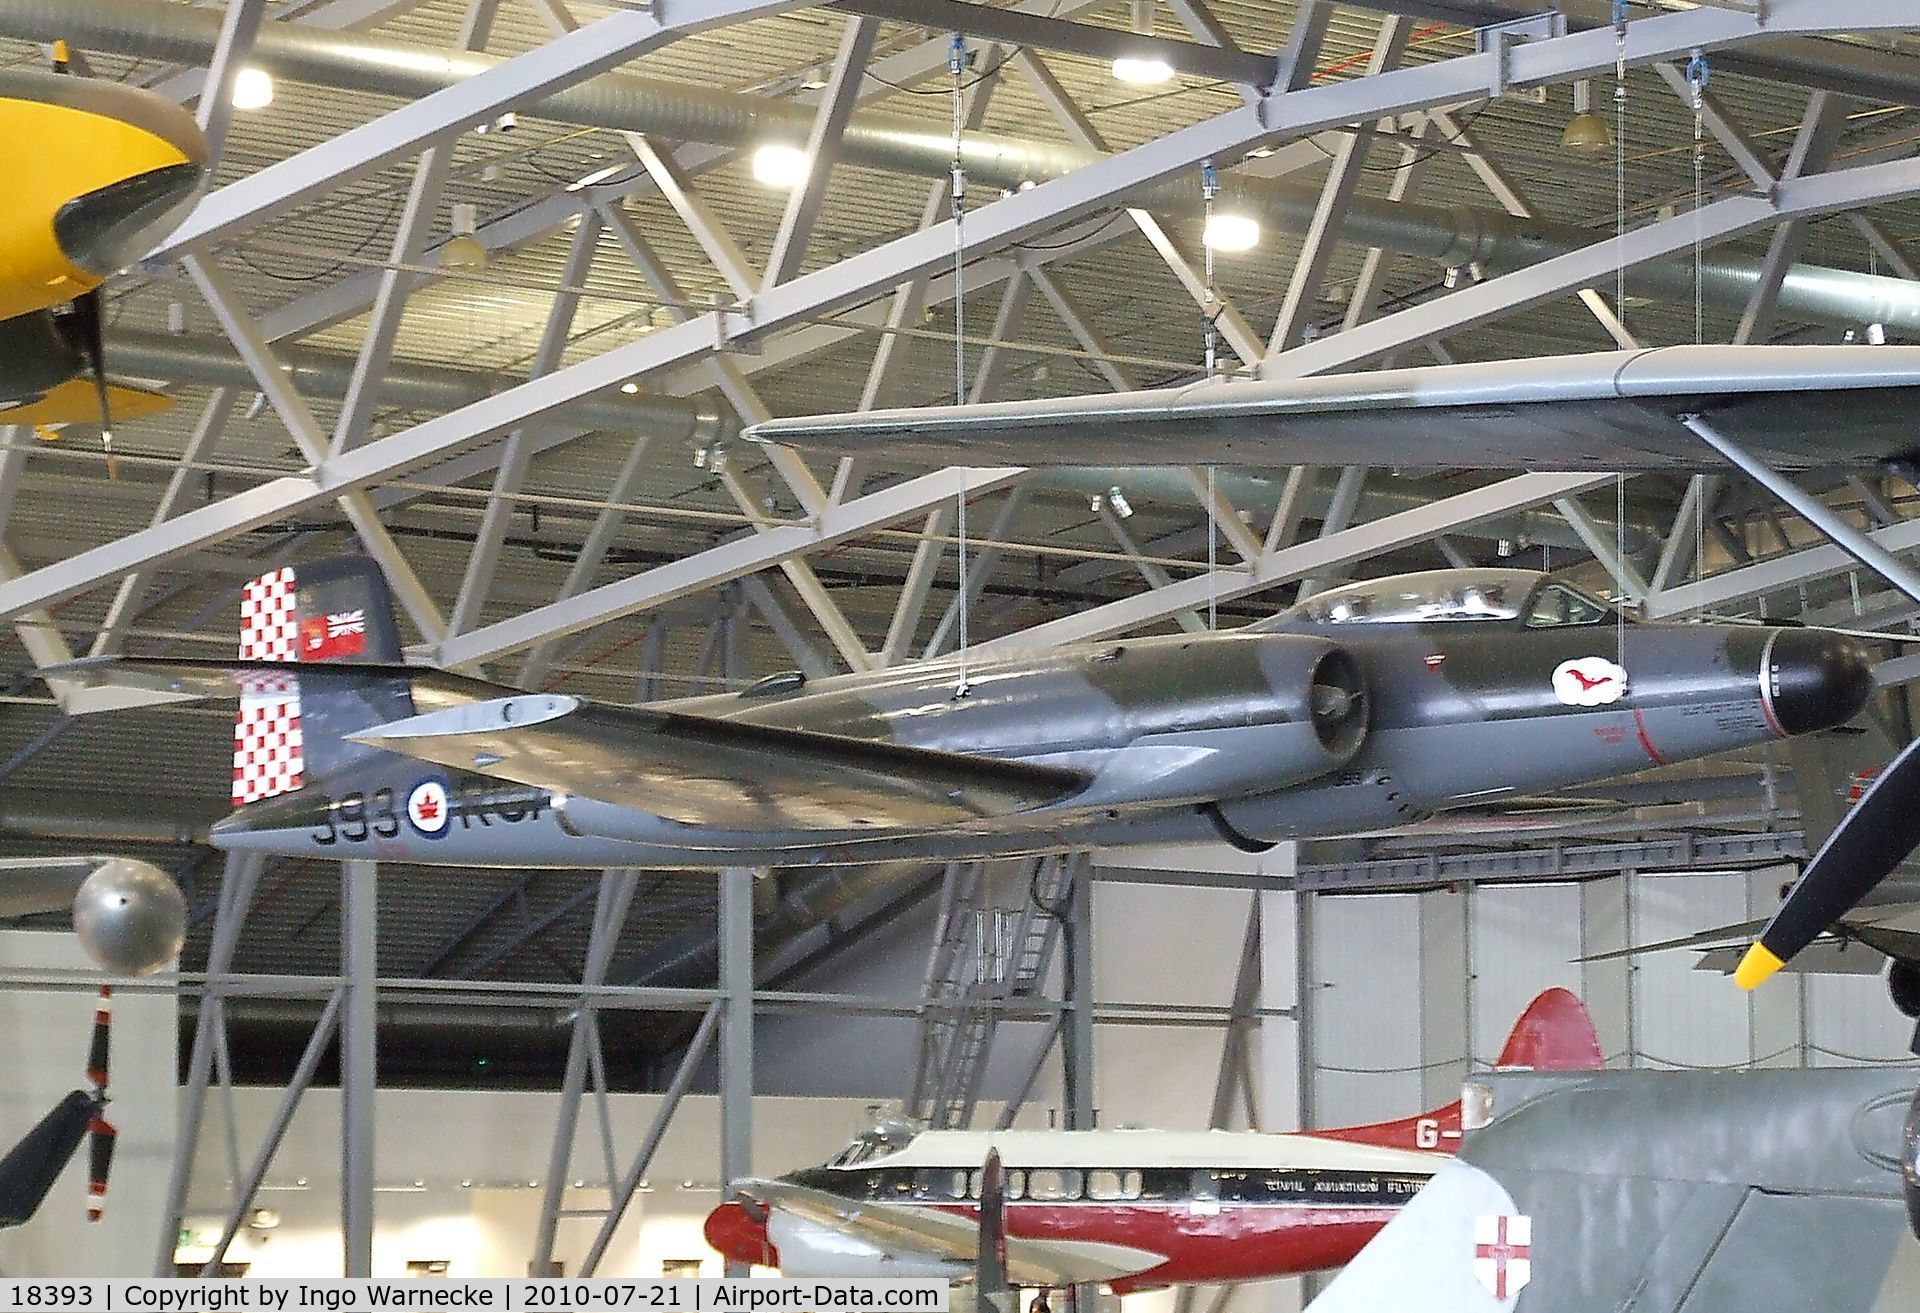 18393, Avro Canada CF-100 Mk.4B Canuck C/N 293, Avro Canada CF-100 Mk.4B Canuck at the Imperial War Museum, Duxford